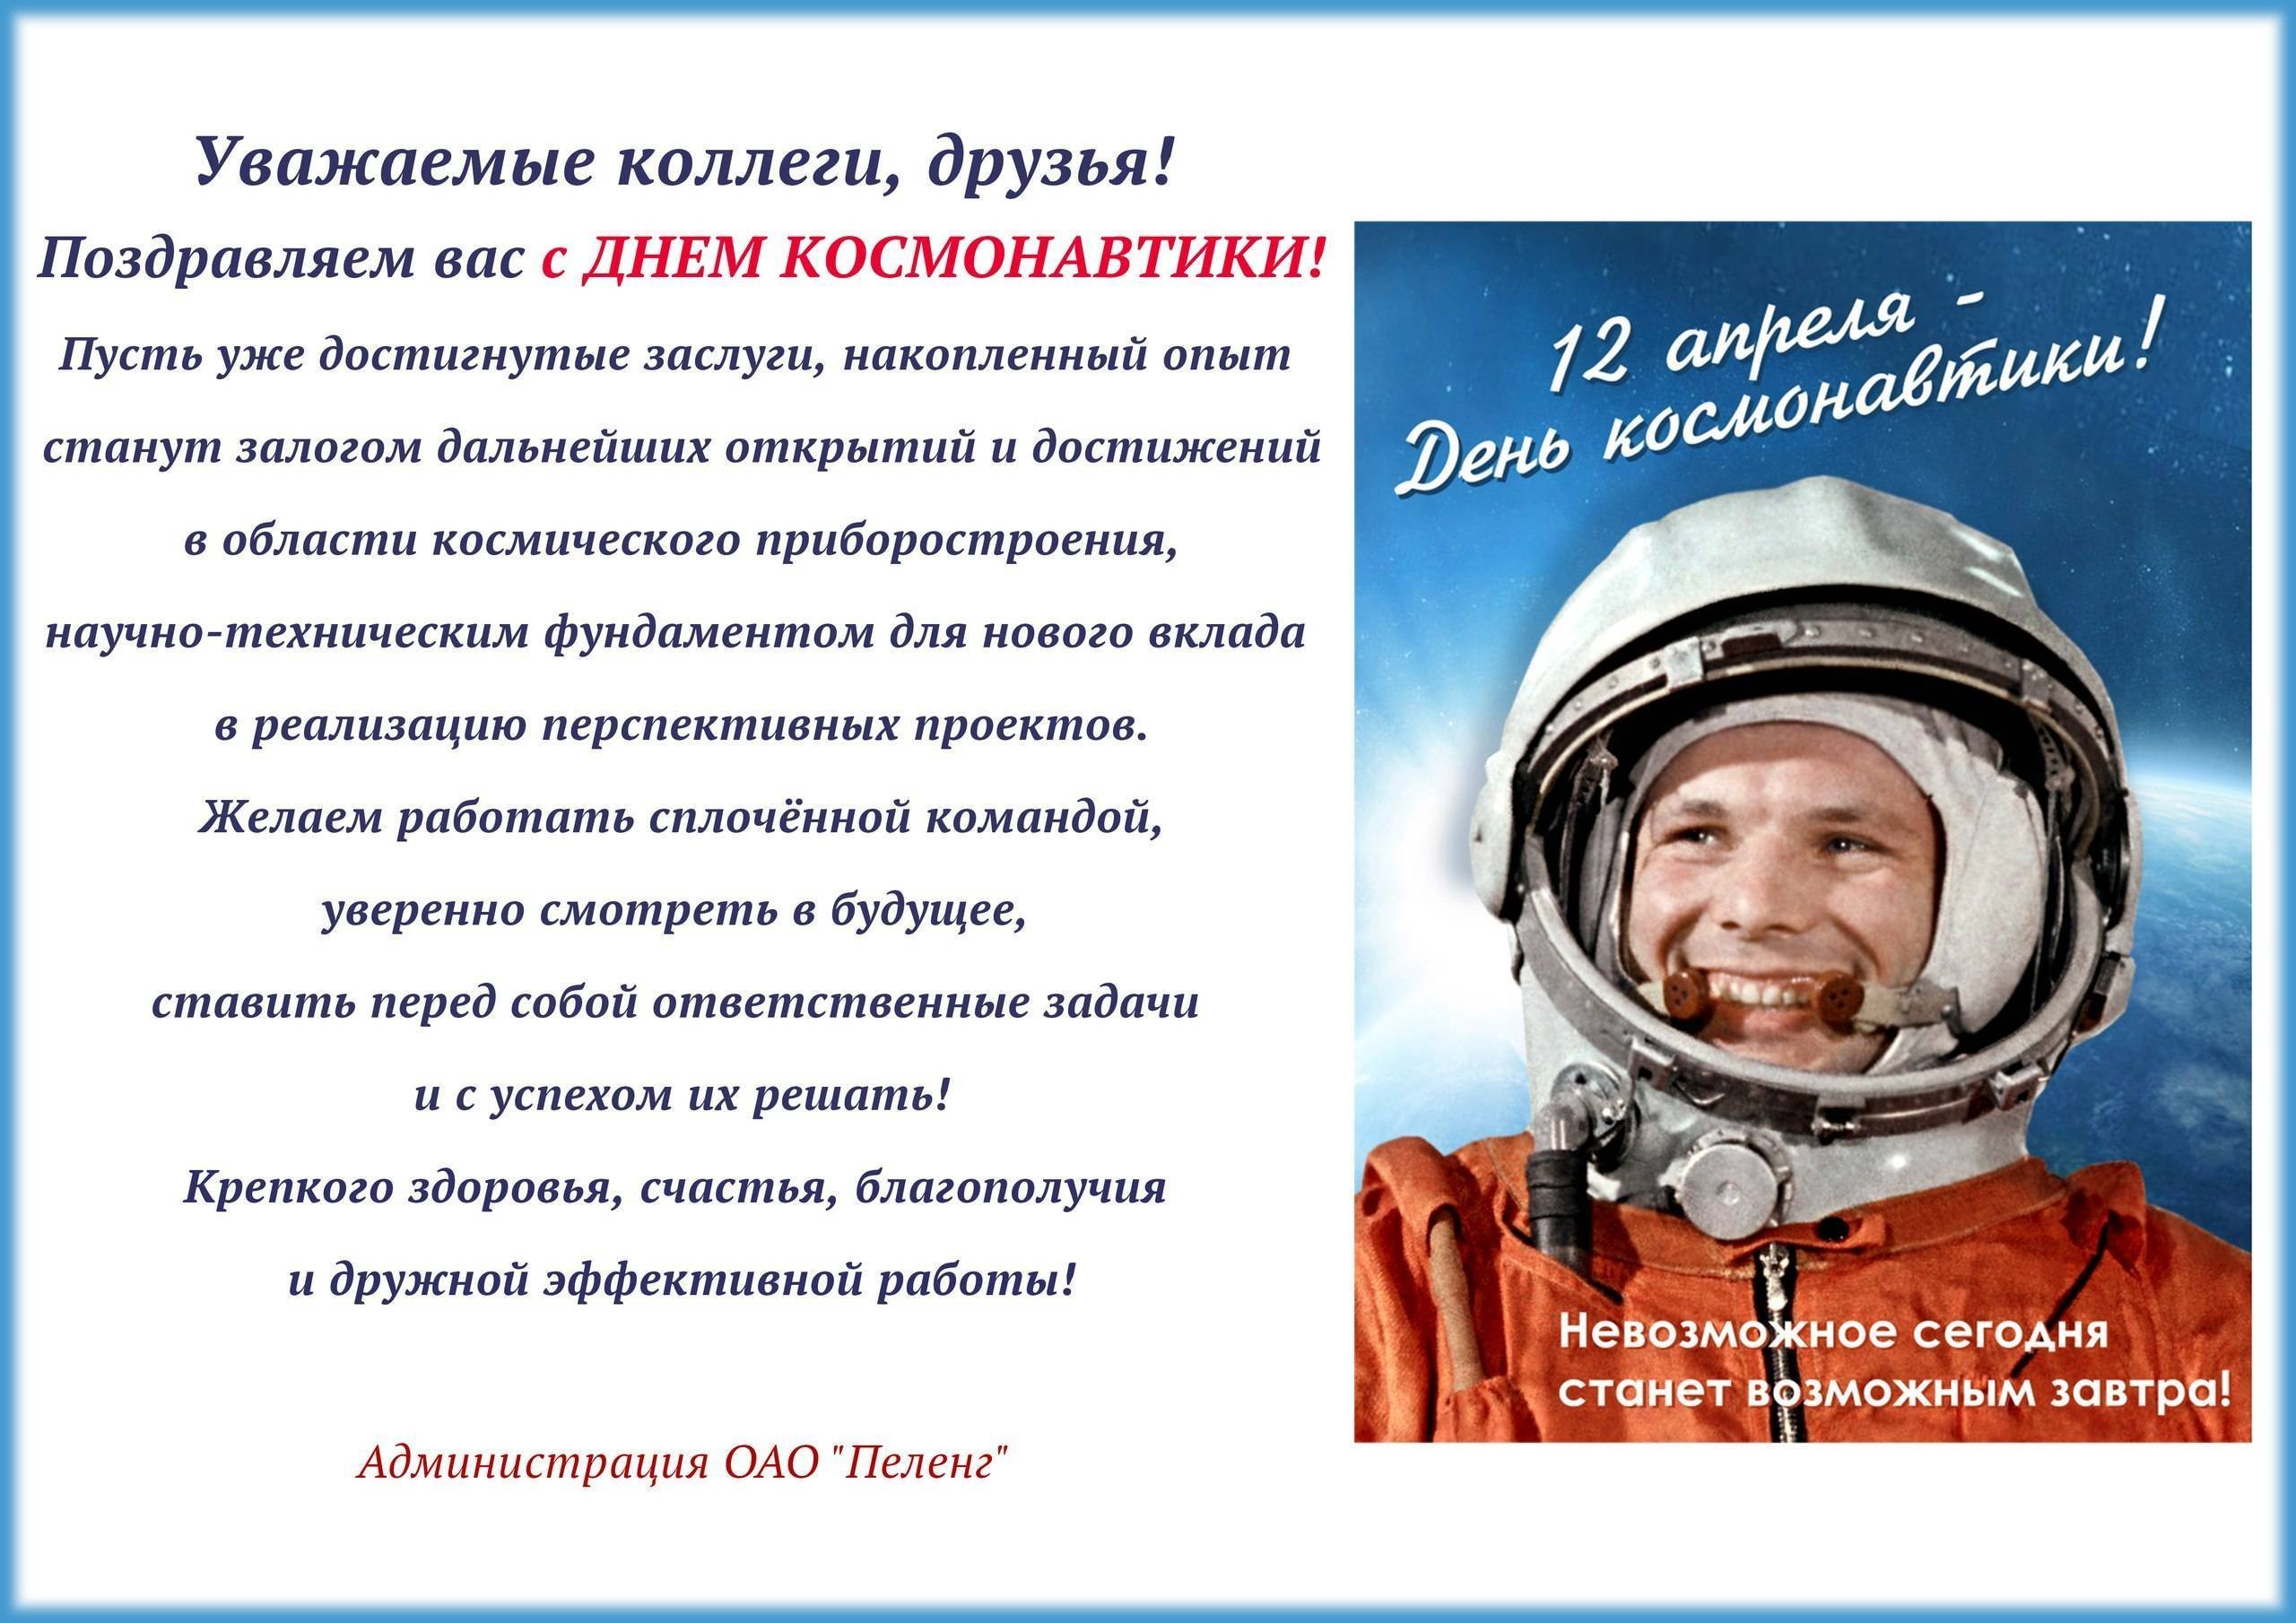 День космонавтики кемерово. С днем космонавтики поздравление. С днем космонавтики пожелания. С днем космонавтики открытки. Поздравление с днем космонавтики в прозе.